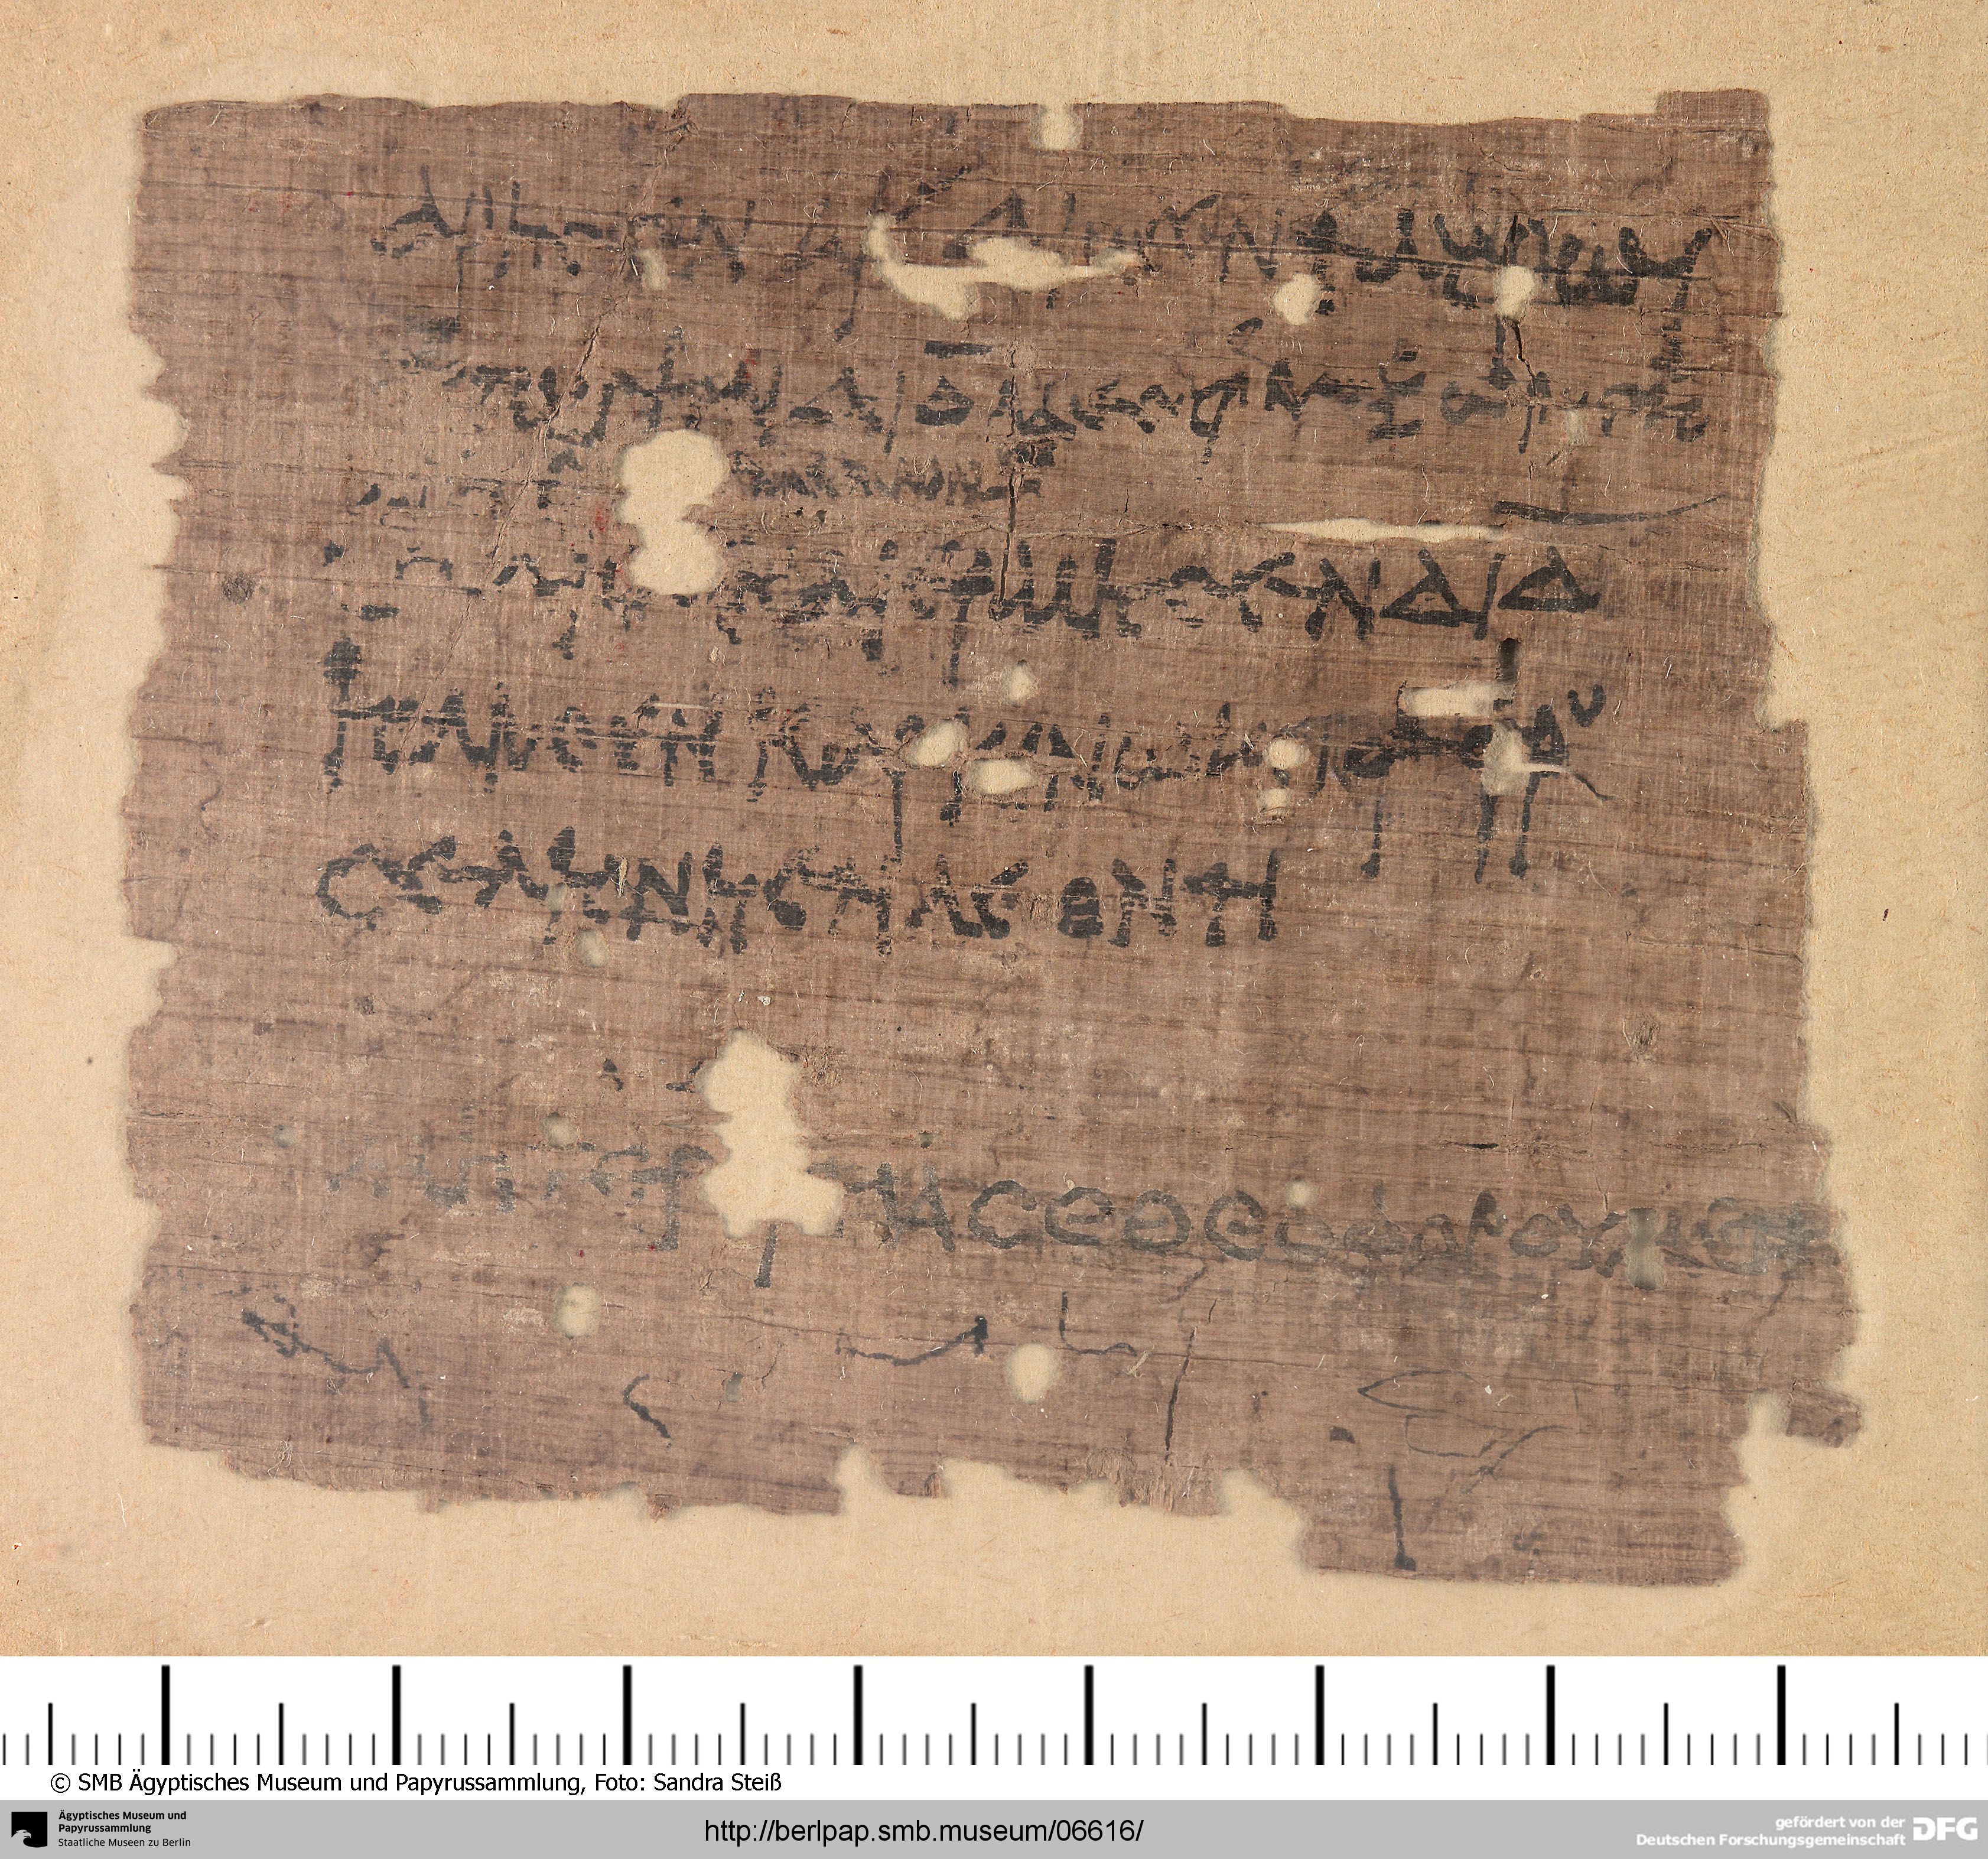 http://berlpap.smb.museum/Original/P_11831_R_001.jpg (Ägyptisches Museum und Papyrussammlung, Staatliche Museen zu Berlin CC BY-NC-SA)